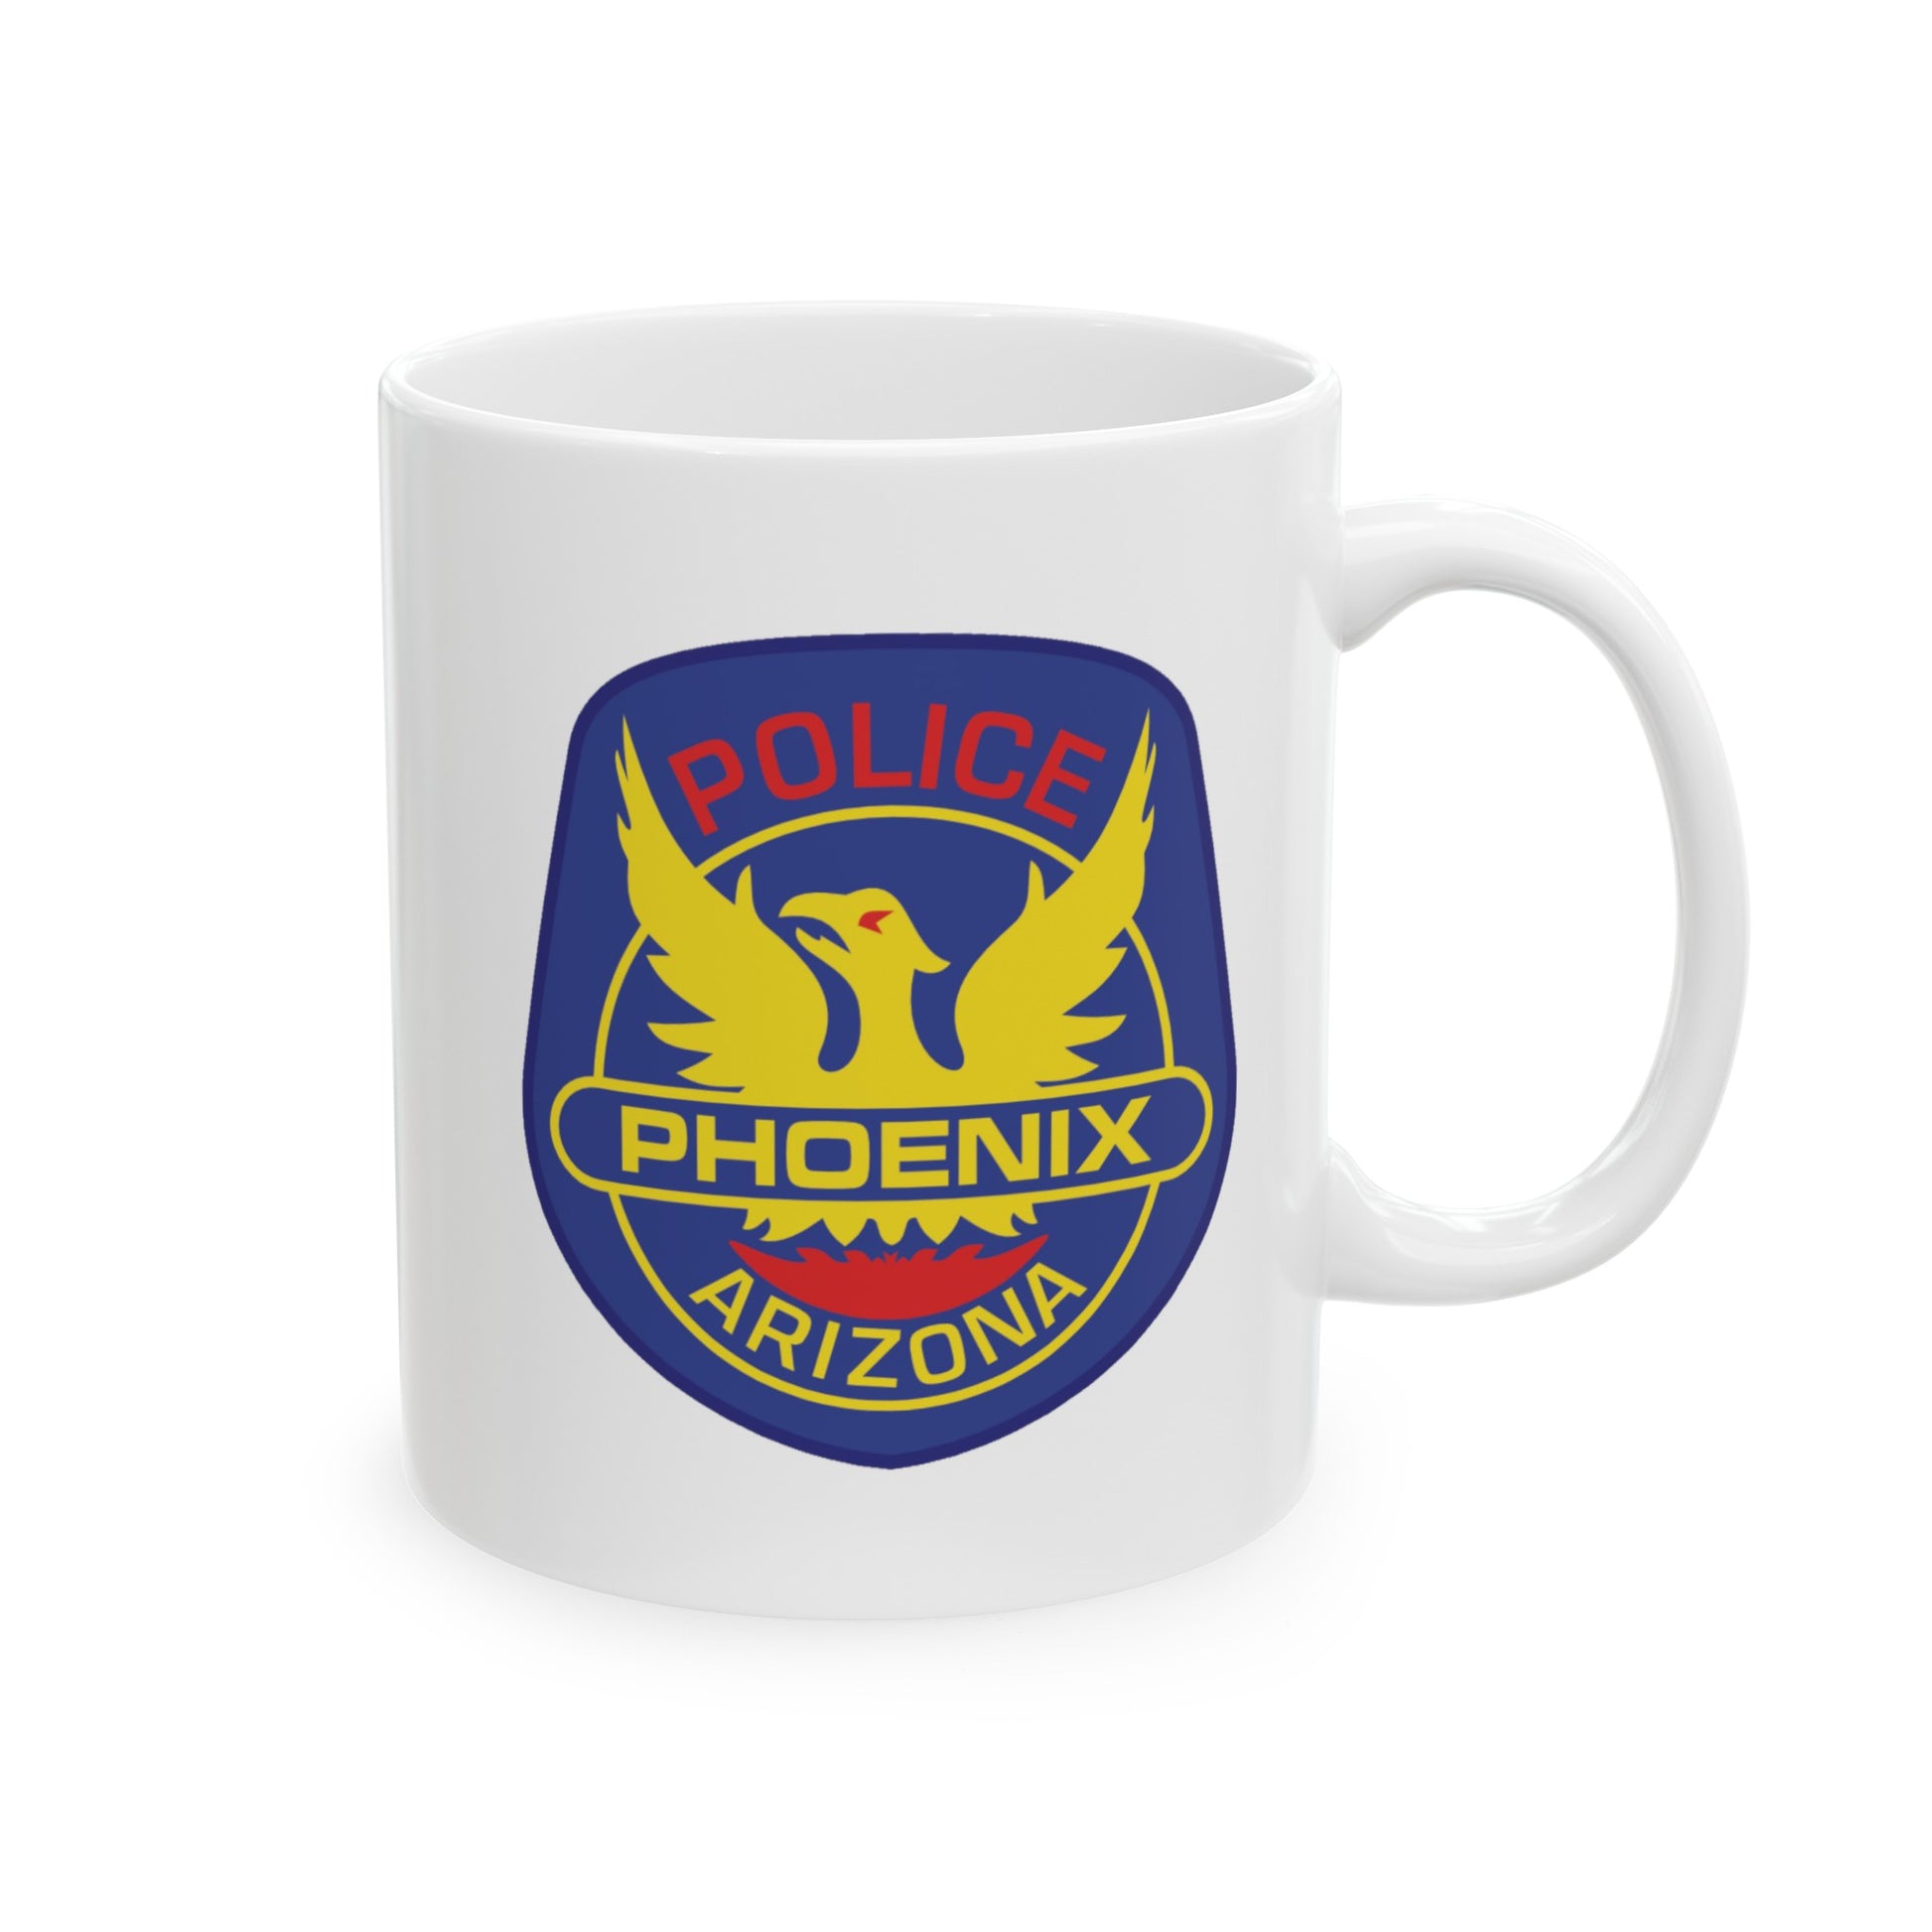 Phoenix Police Coffee Mug - Double Sided White Ceramic 11oz by TheGlassyLass.com